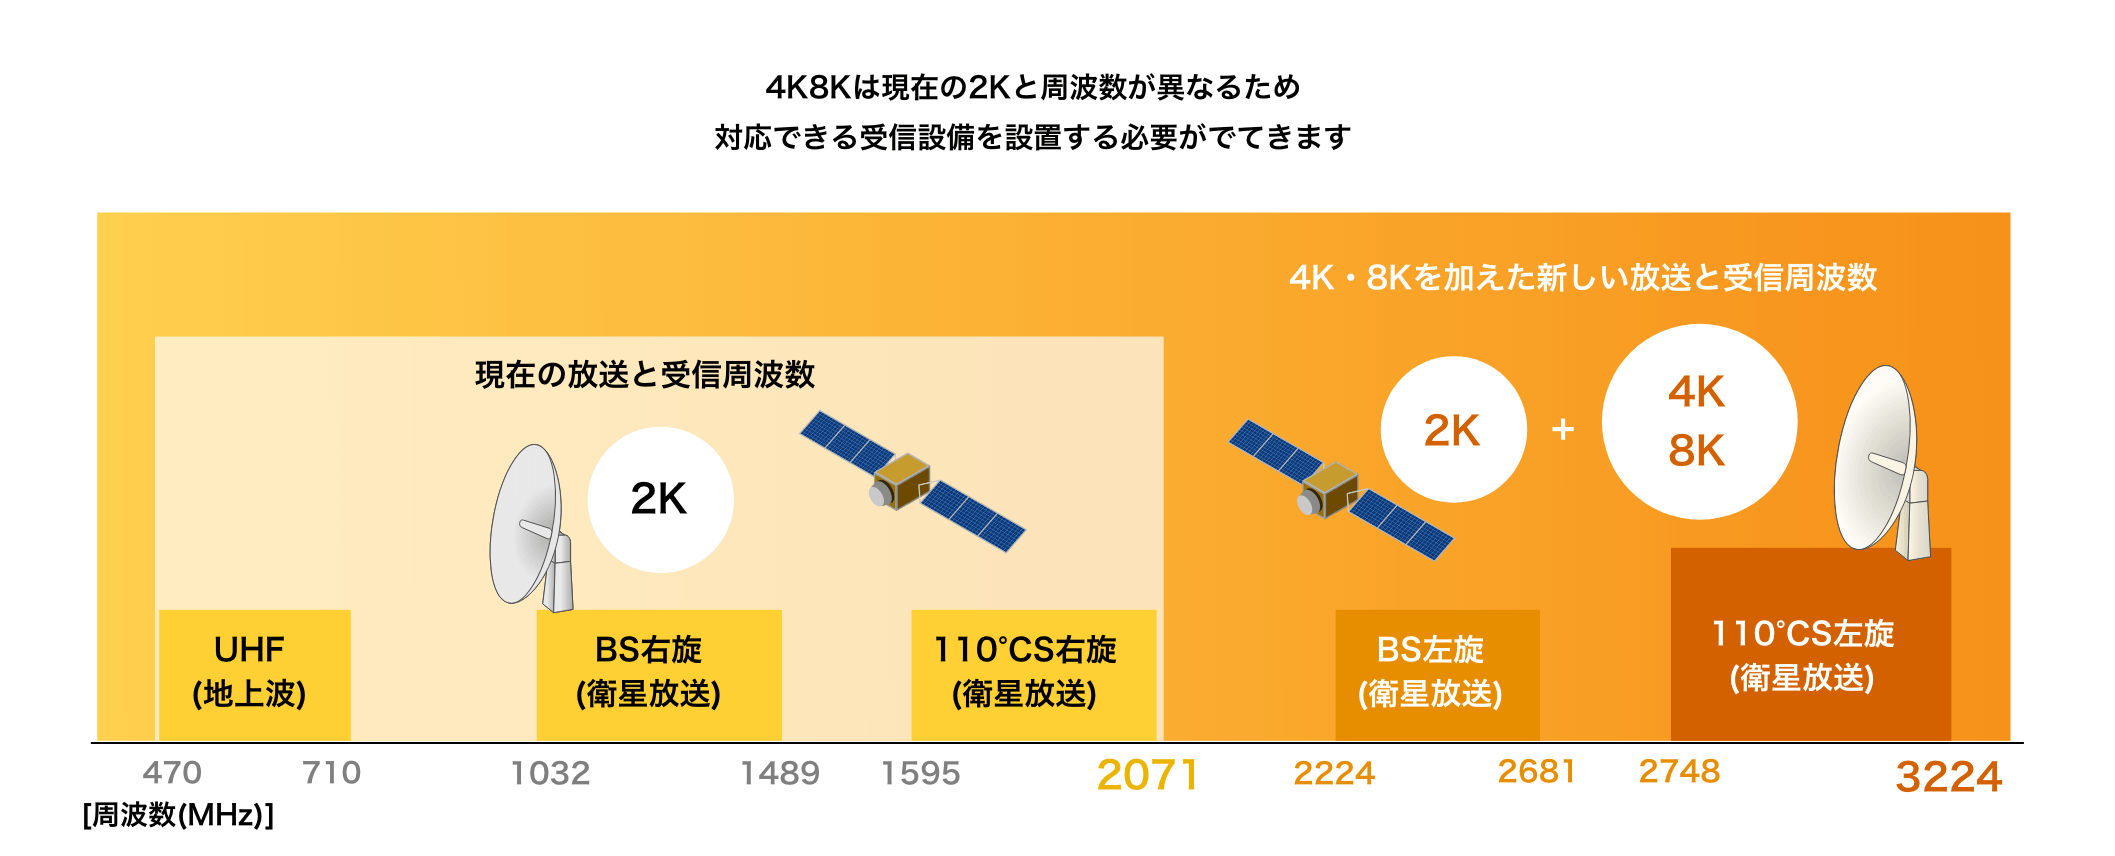 4K8Kは現在の2Kと周波数が異なるため対応できる受信設備を設置する必要がでてきます